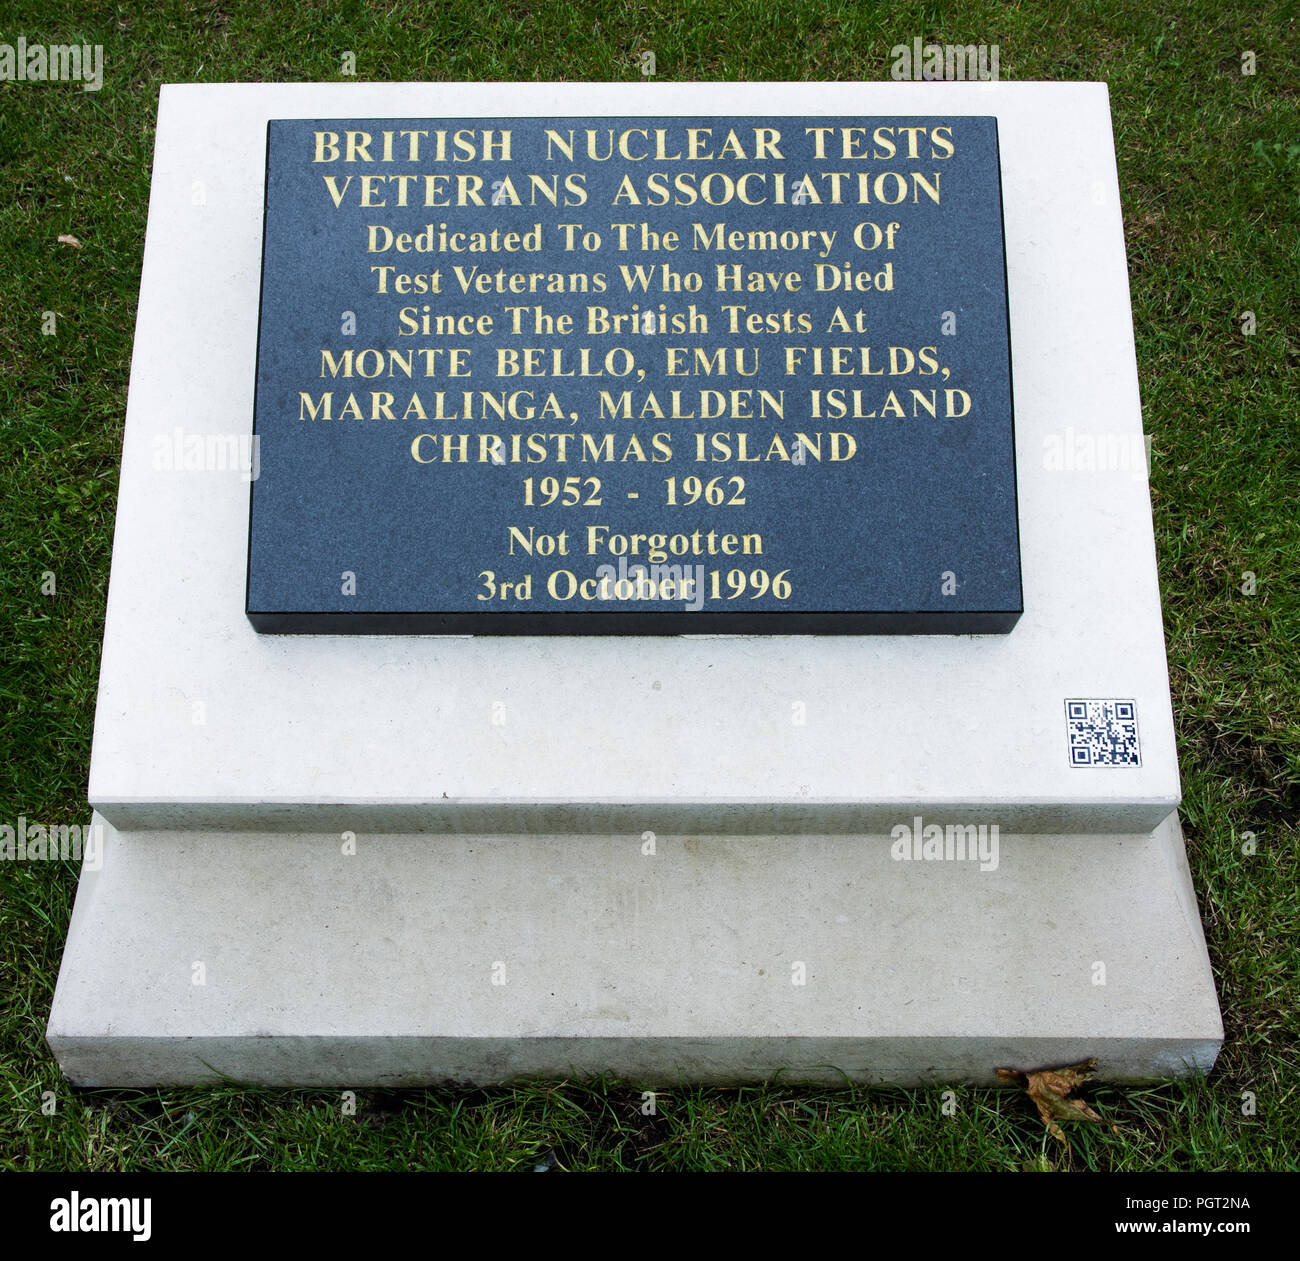 La placa al pie de un cenotafio de Manchester, Inglaterra War Memorial lee los ensayos nucleares británicos veteranos asociación dedicada a los veteranos de prueba Foto de stock